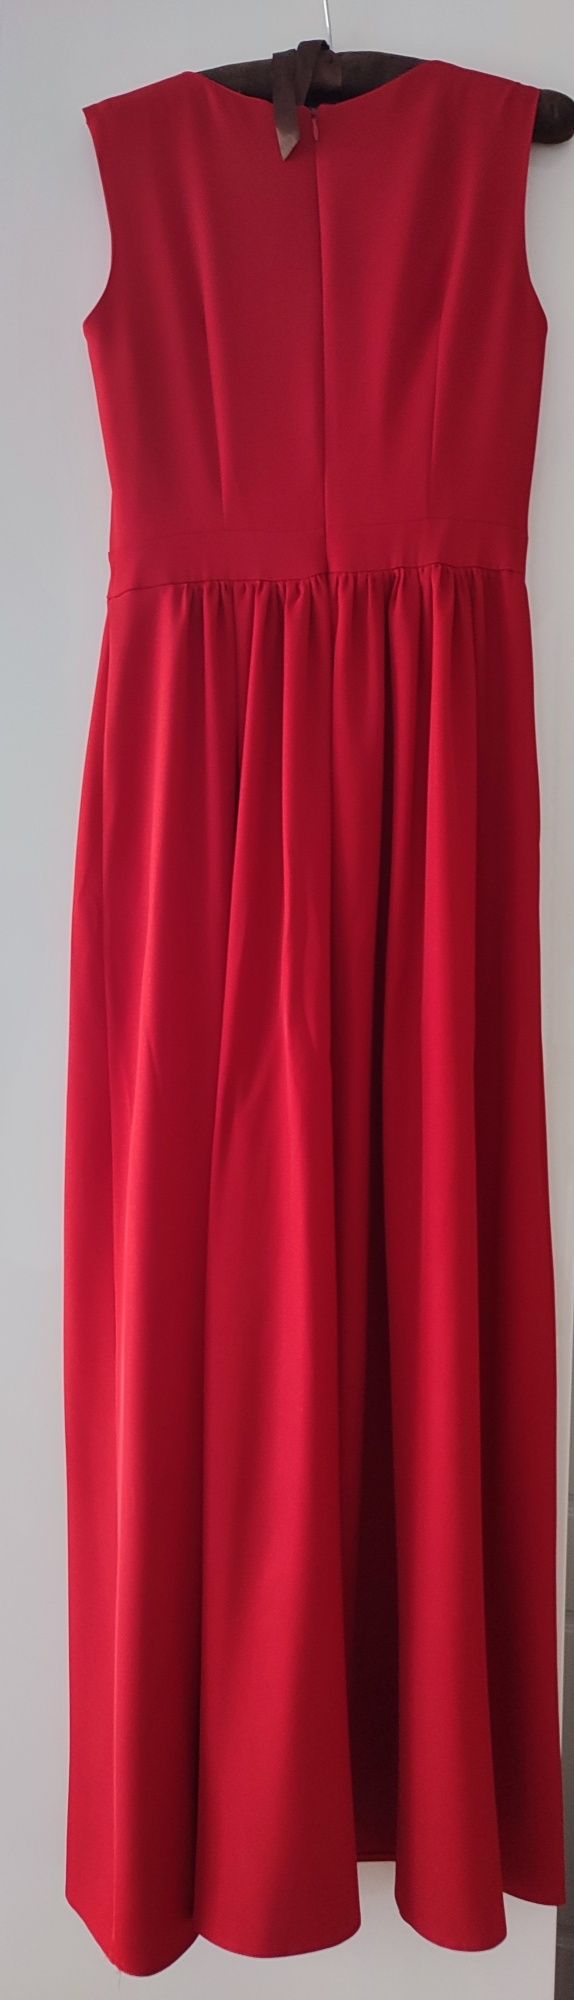 Czerwona sukienka maxi na wesele